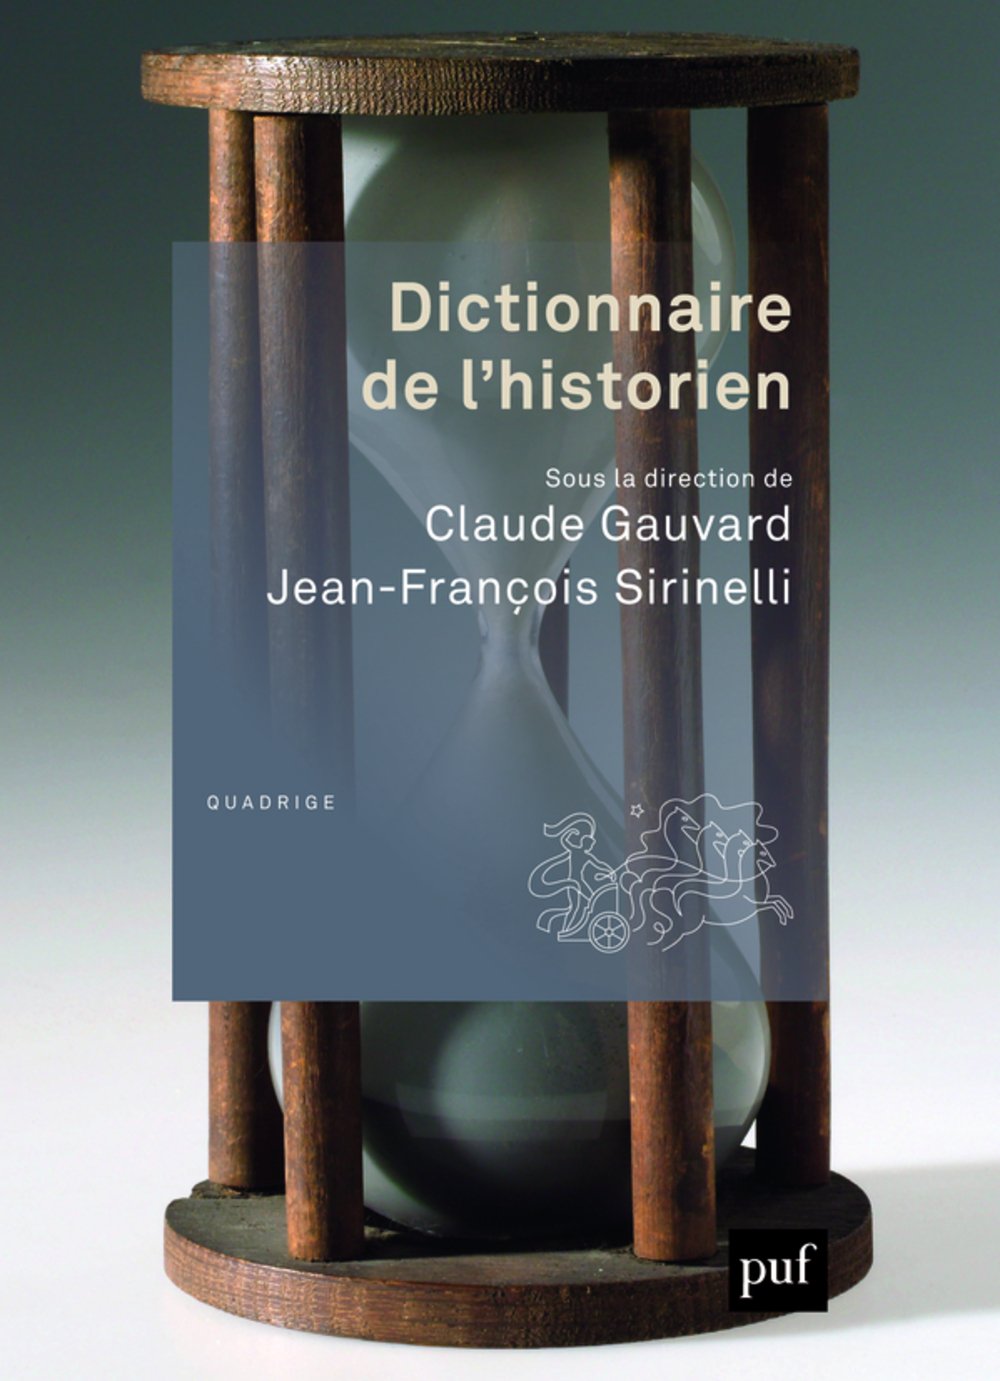 Dictionnaire de l'historien, 2015, 810 p.